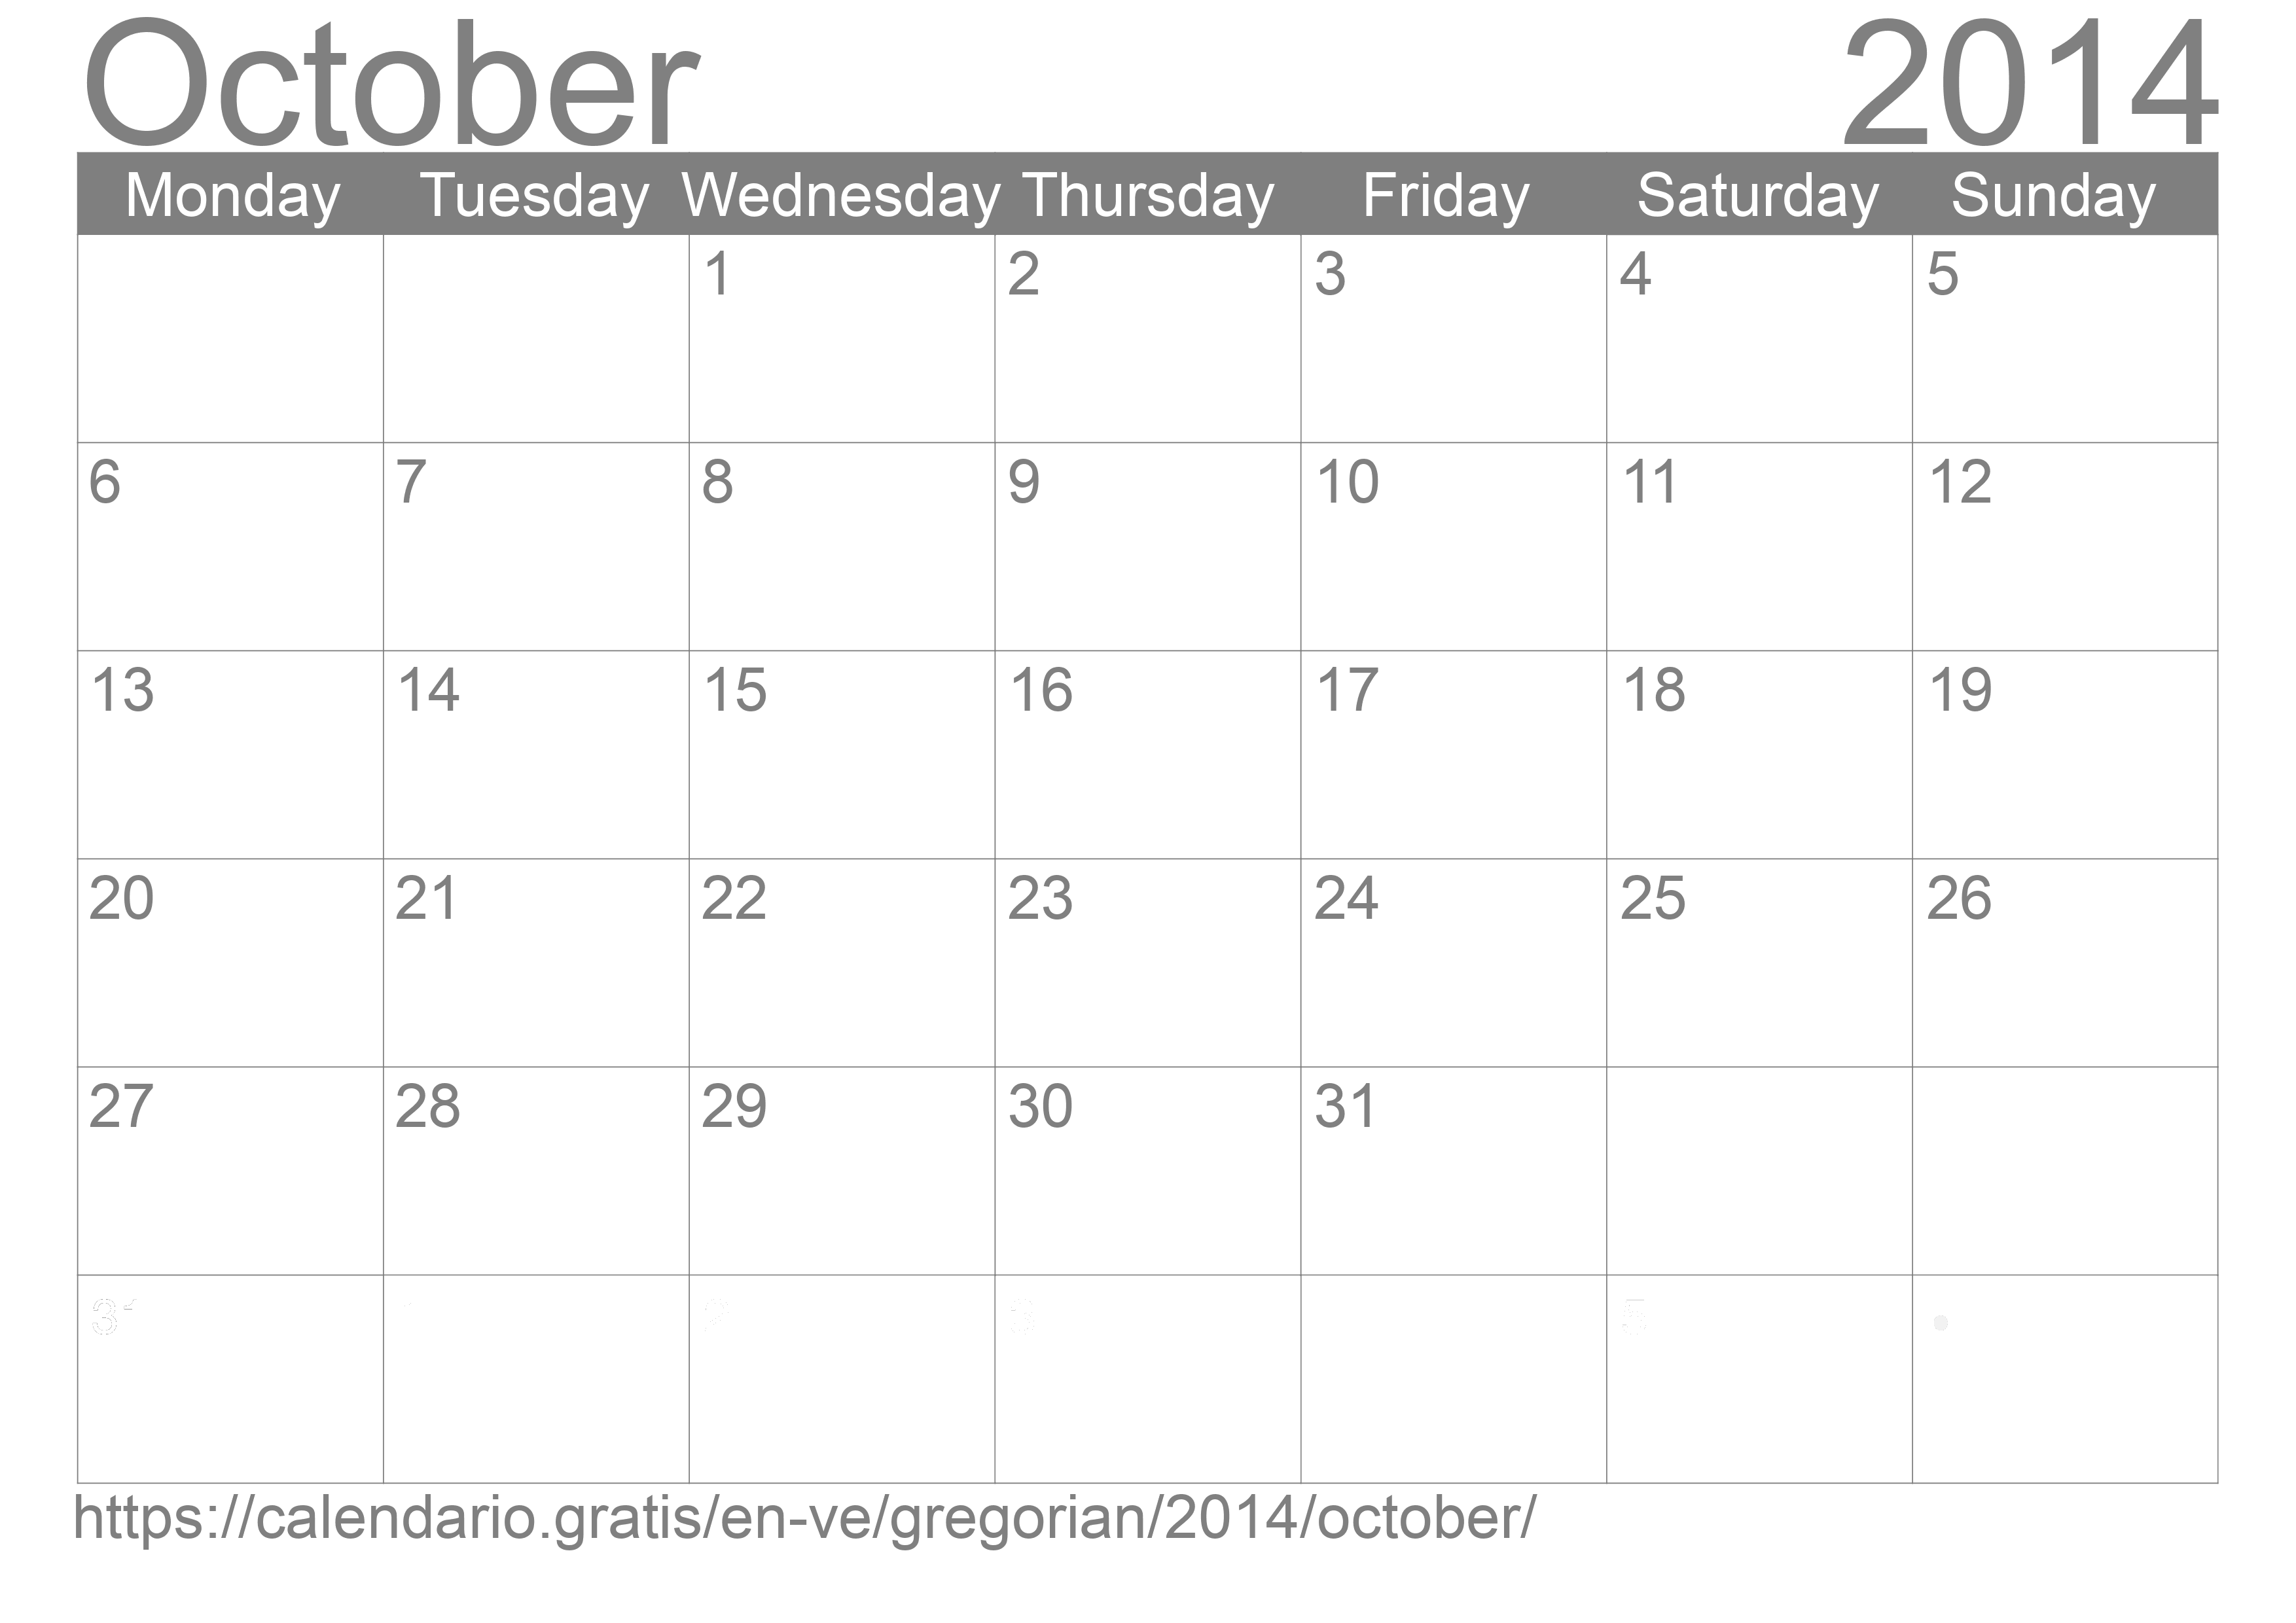 Calendar October 2014 to print